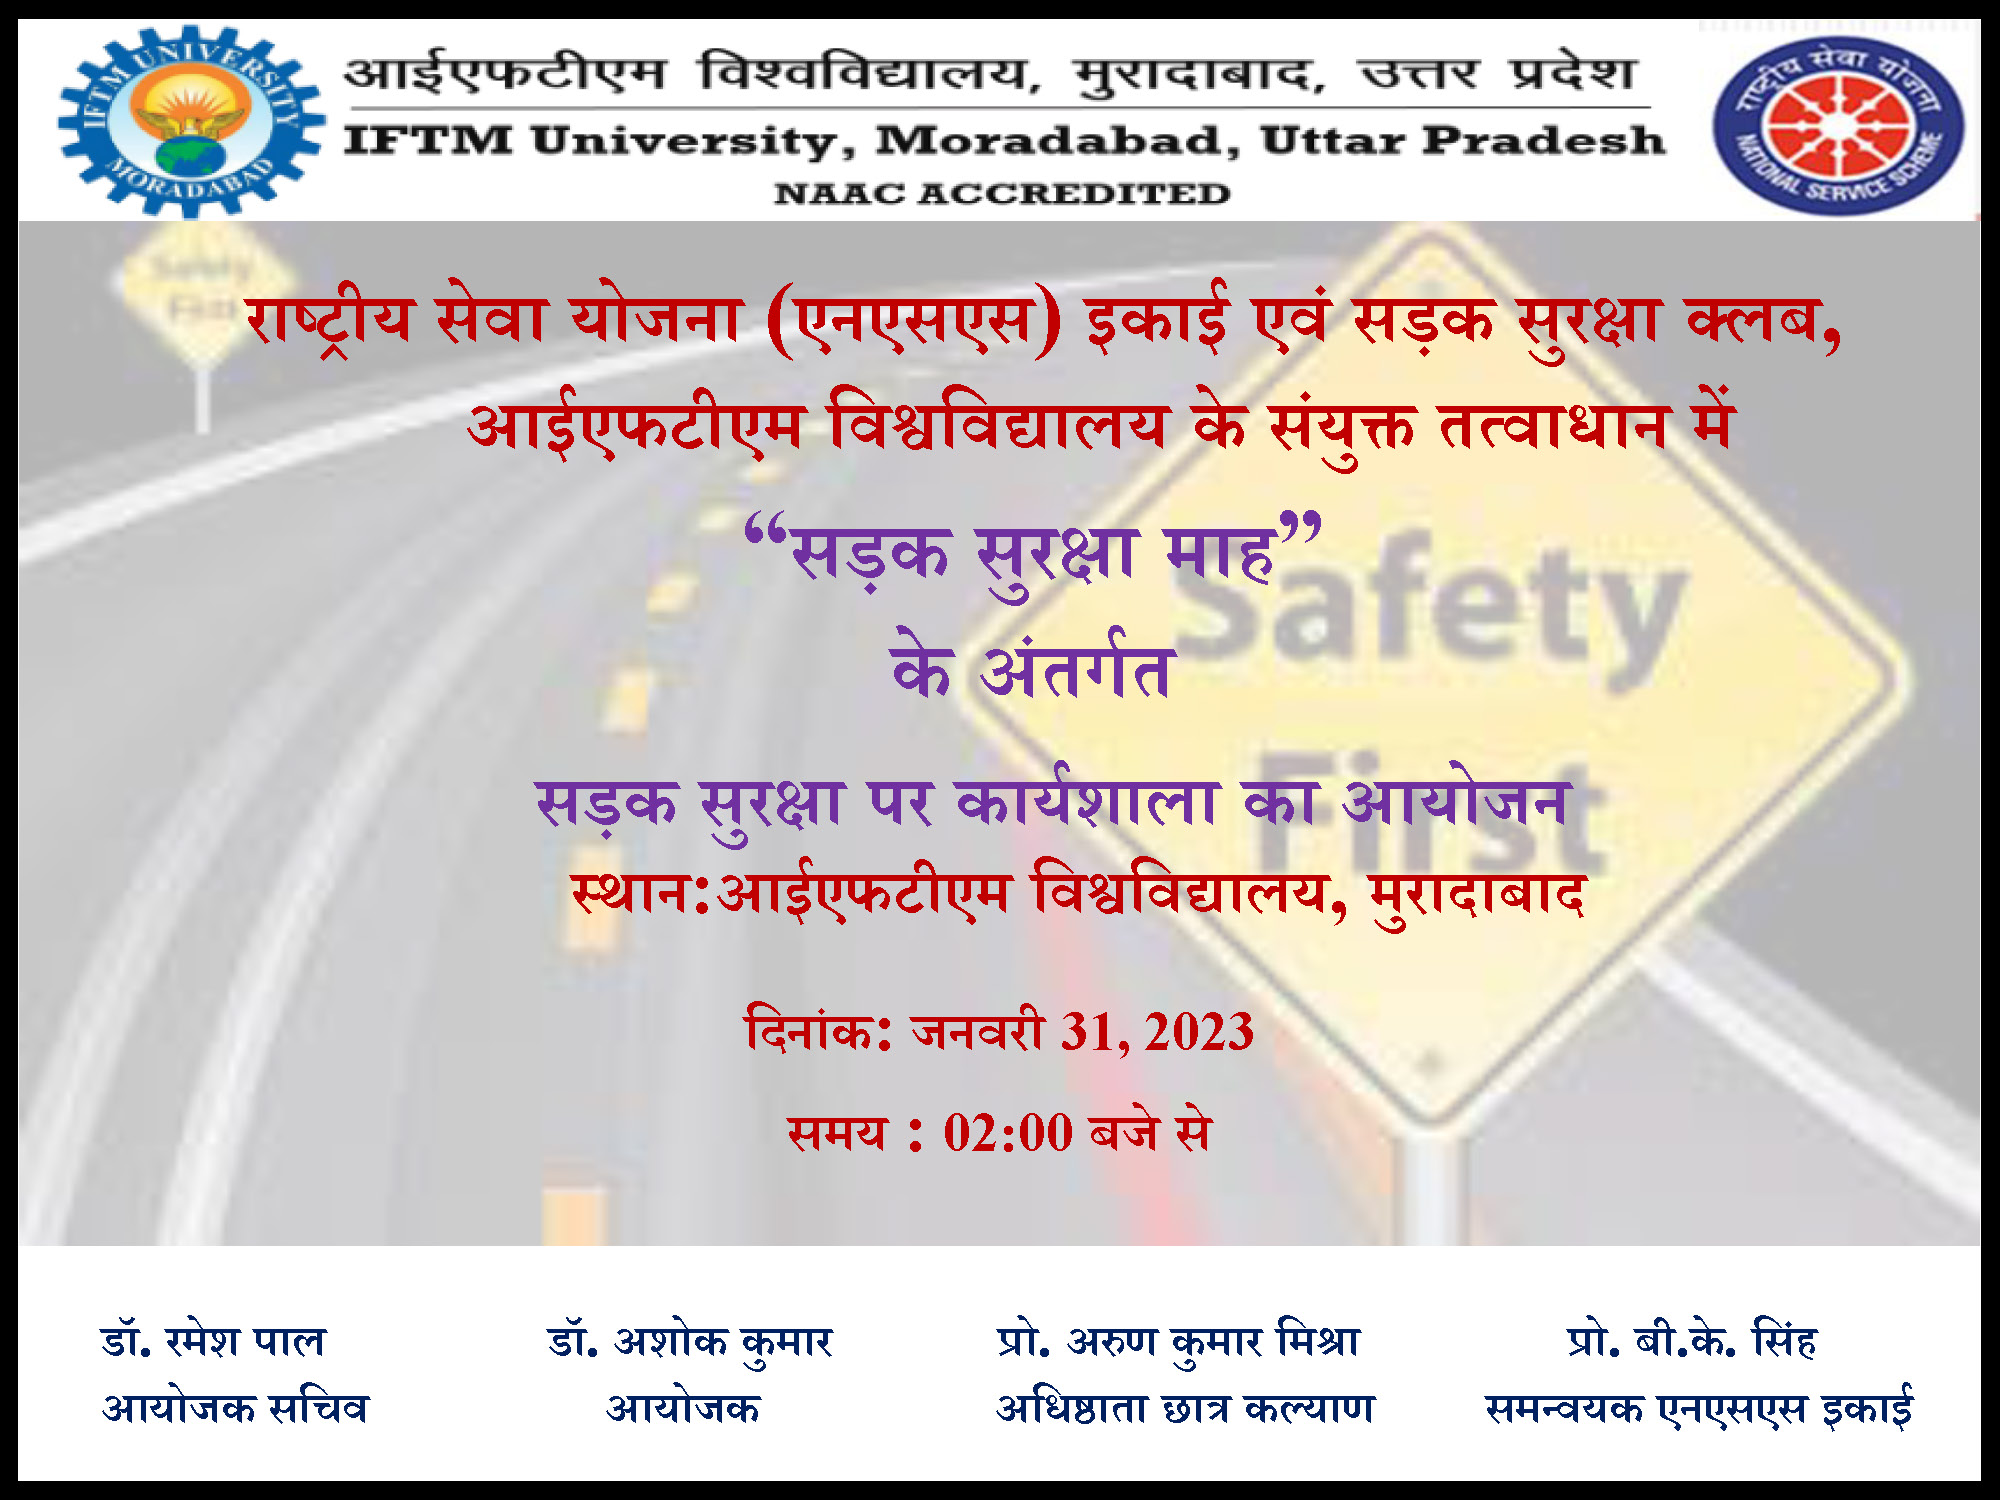 Workshop on Road Safety